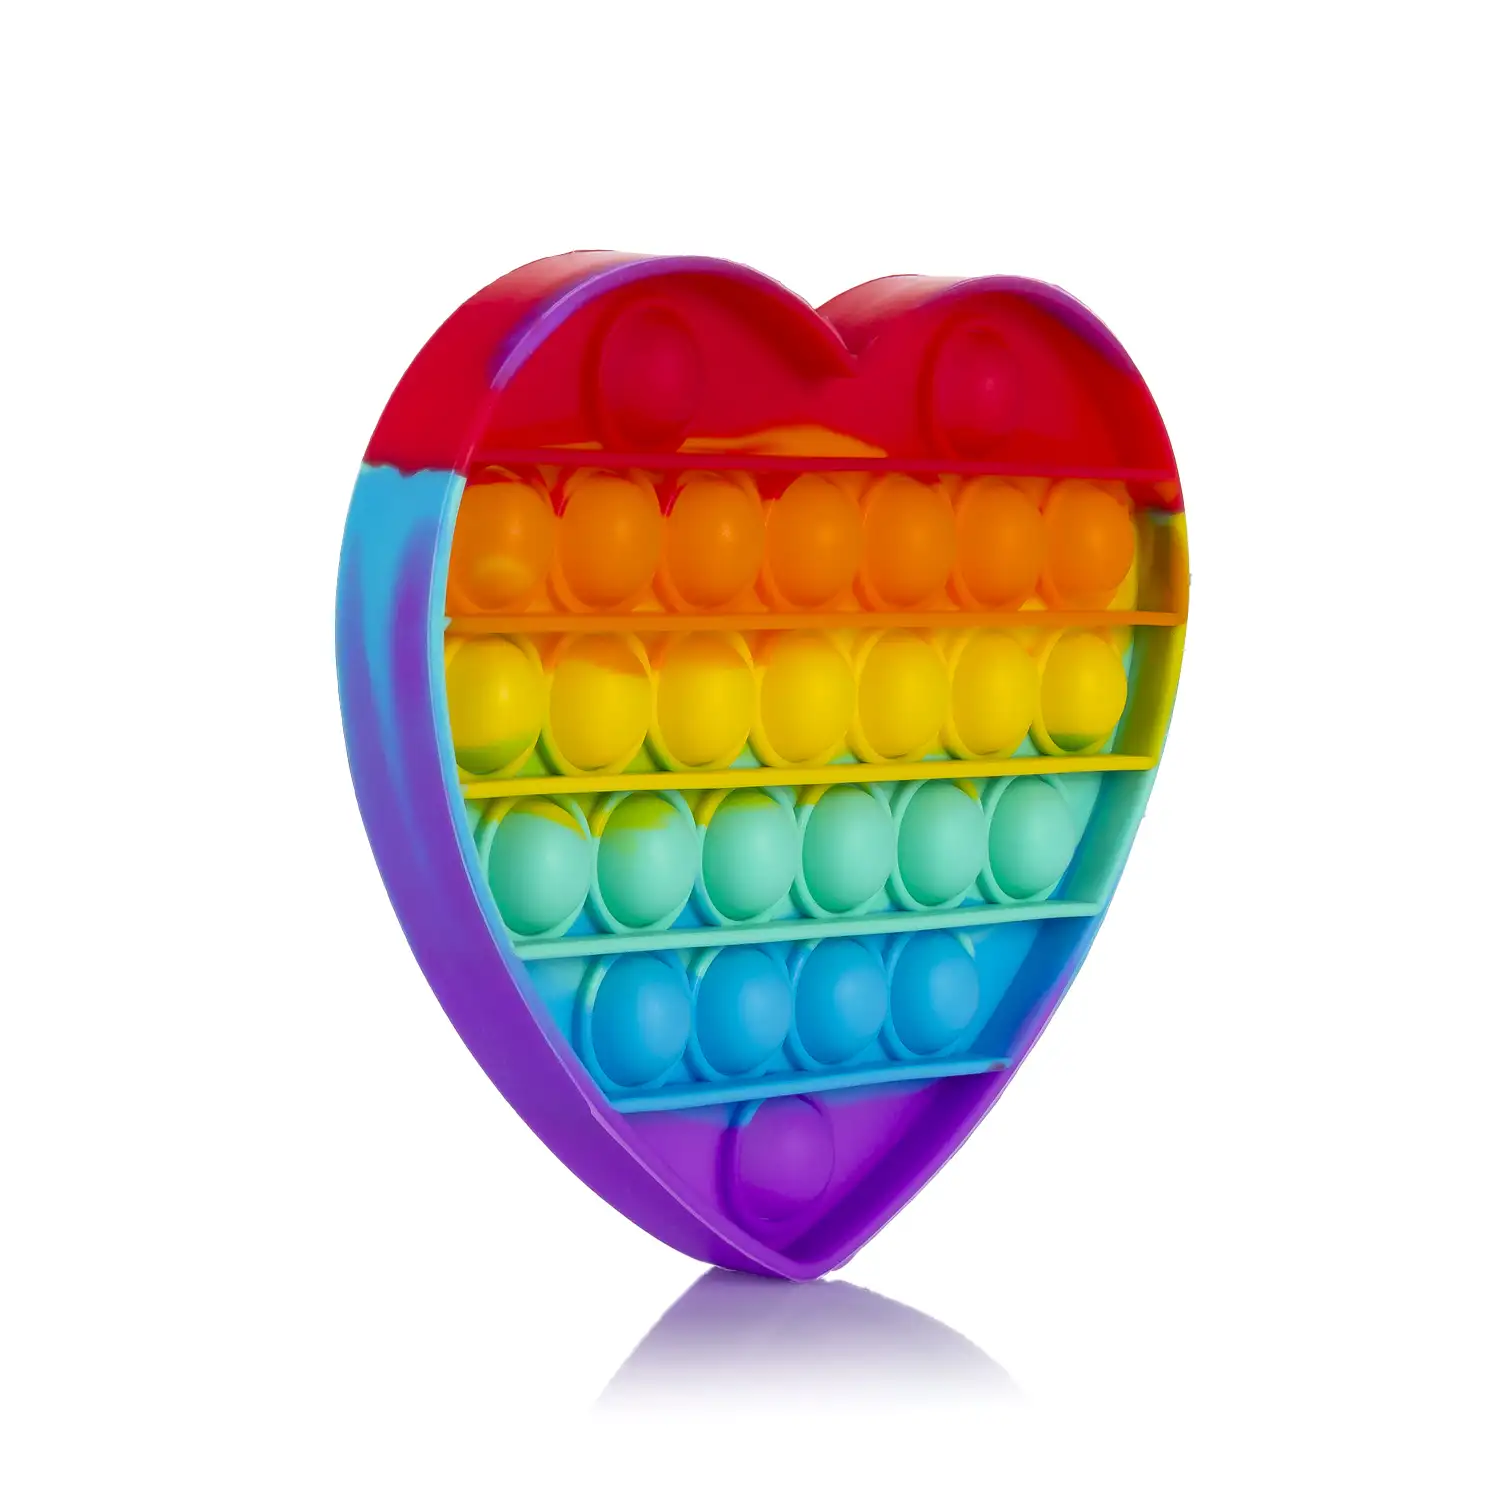 Bubble Pop It juguete sensitivo desestresante, burbujas de silicona para apretar y pulsar. Diseño corazón multicolor.